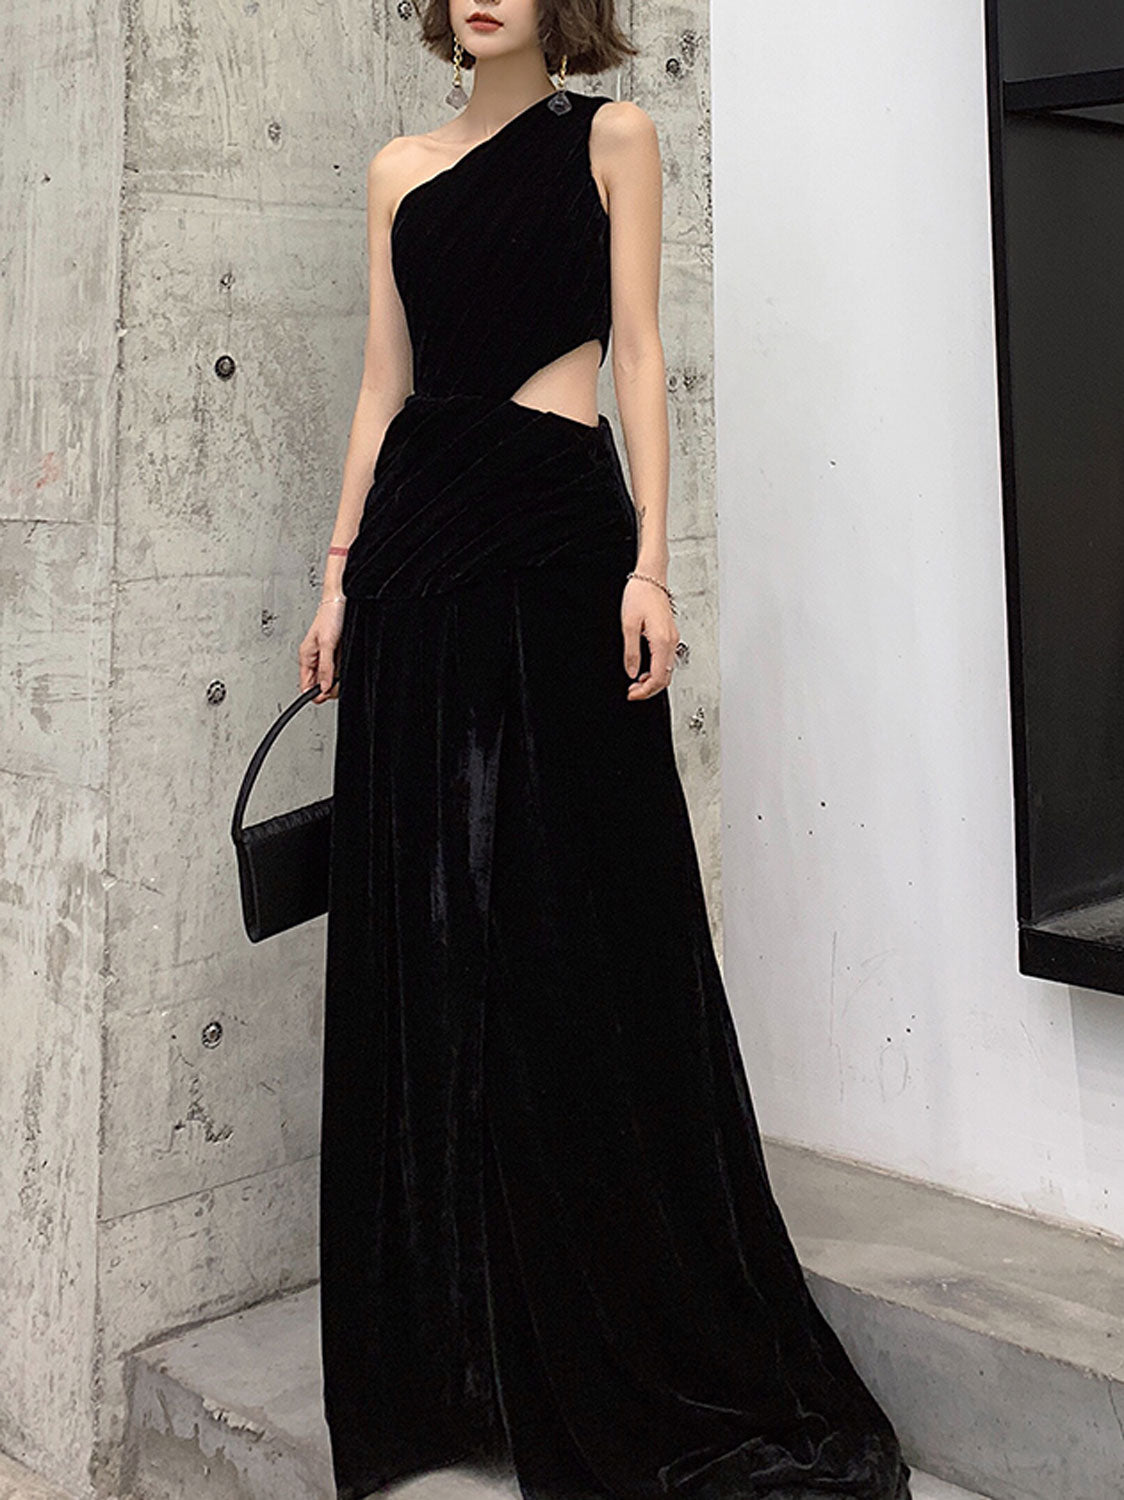 Blake Lively Black Velvet Off-the-shoulder Evening Dress -  TheCelebrityDresses